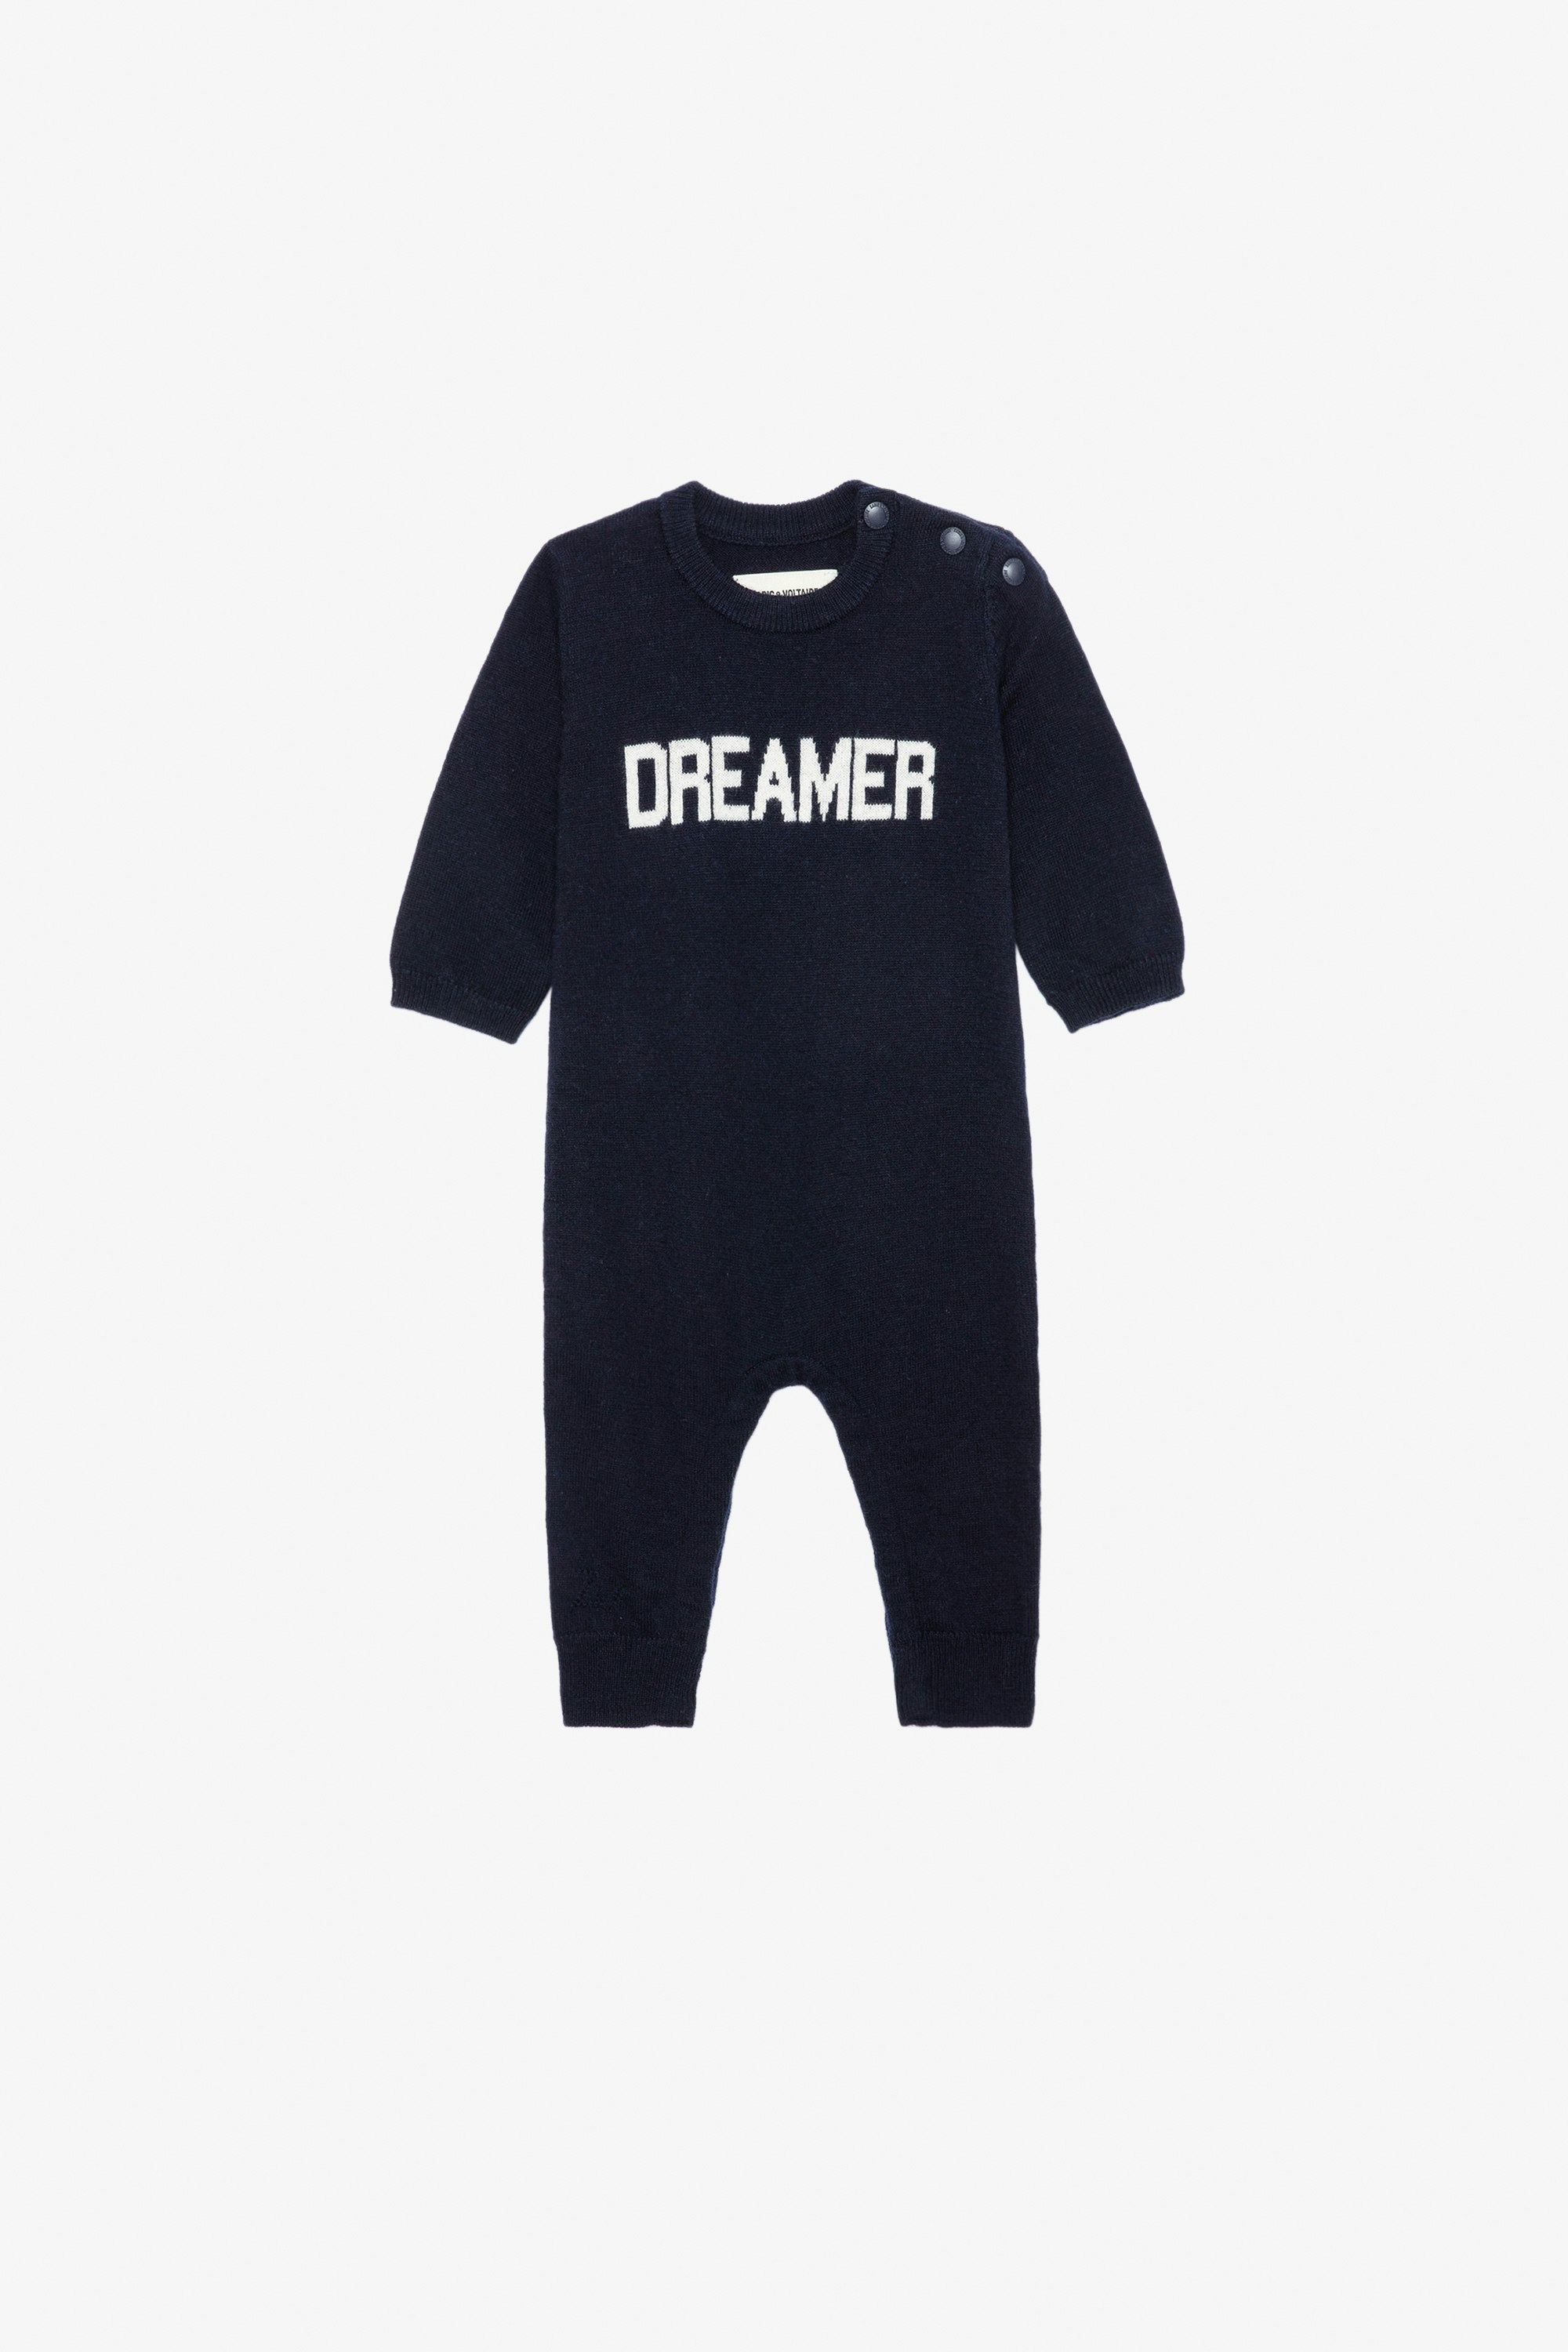 Tuta intera Didou Neonato - Tuta intera lavorata a maglia blu navy con scritta "Dreamer" da neonato.